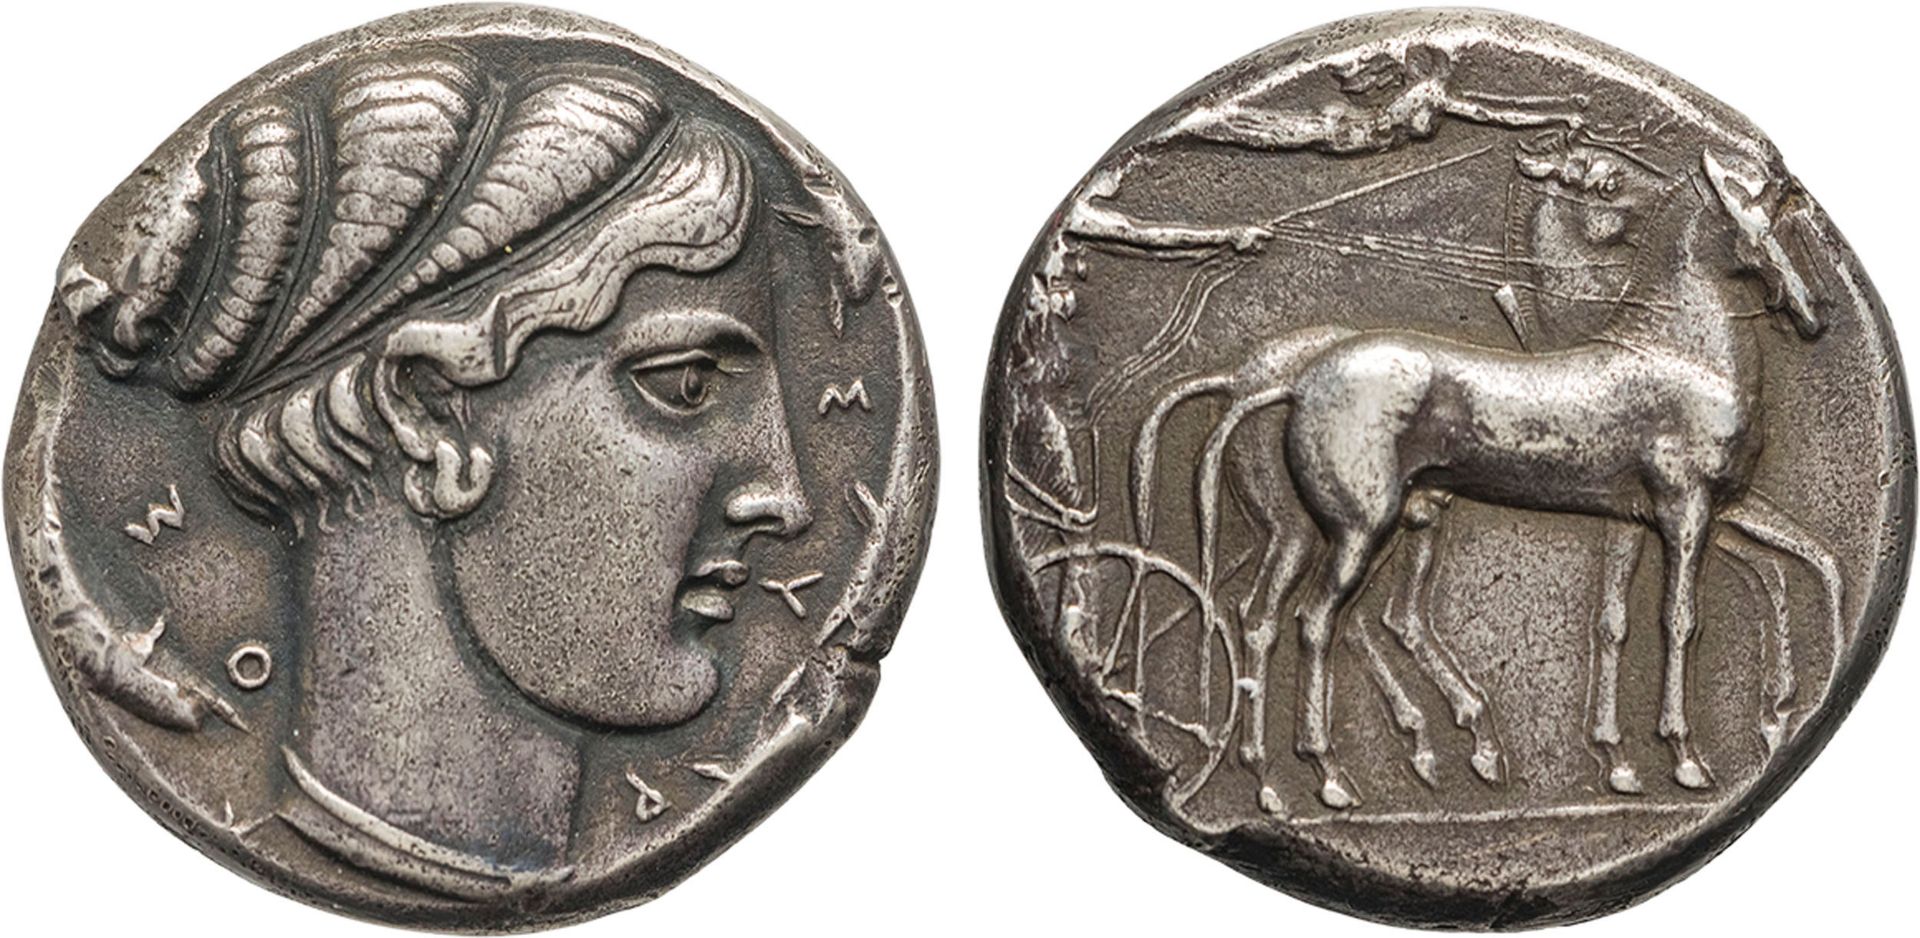 MONETE GRECHE. SICILIA. SIRACUSA (420-415 A.C.). TETRADRACMA